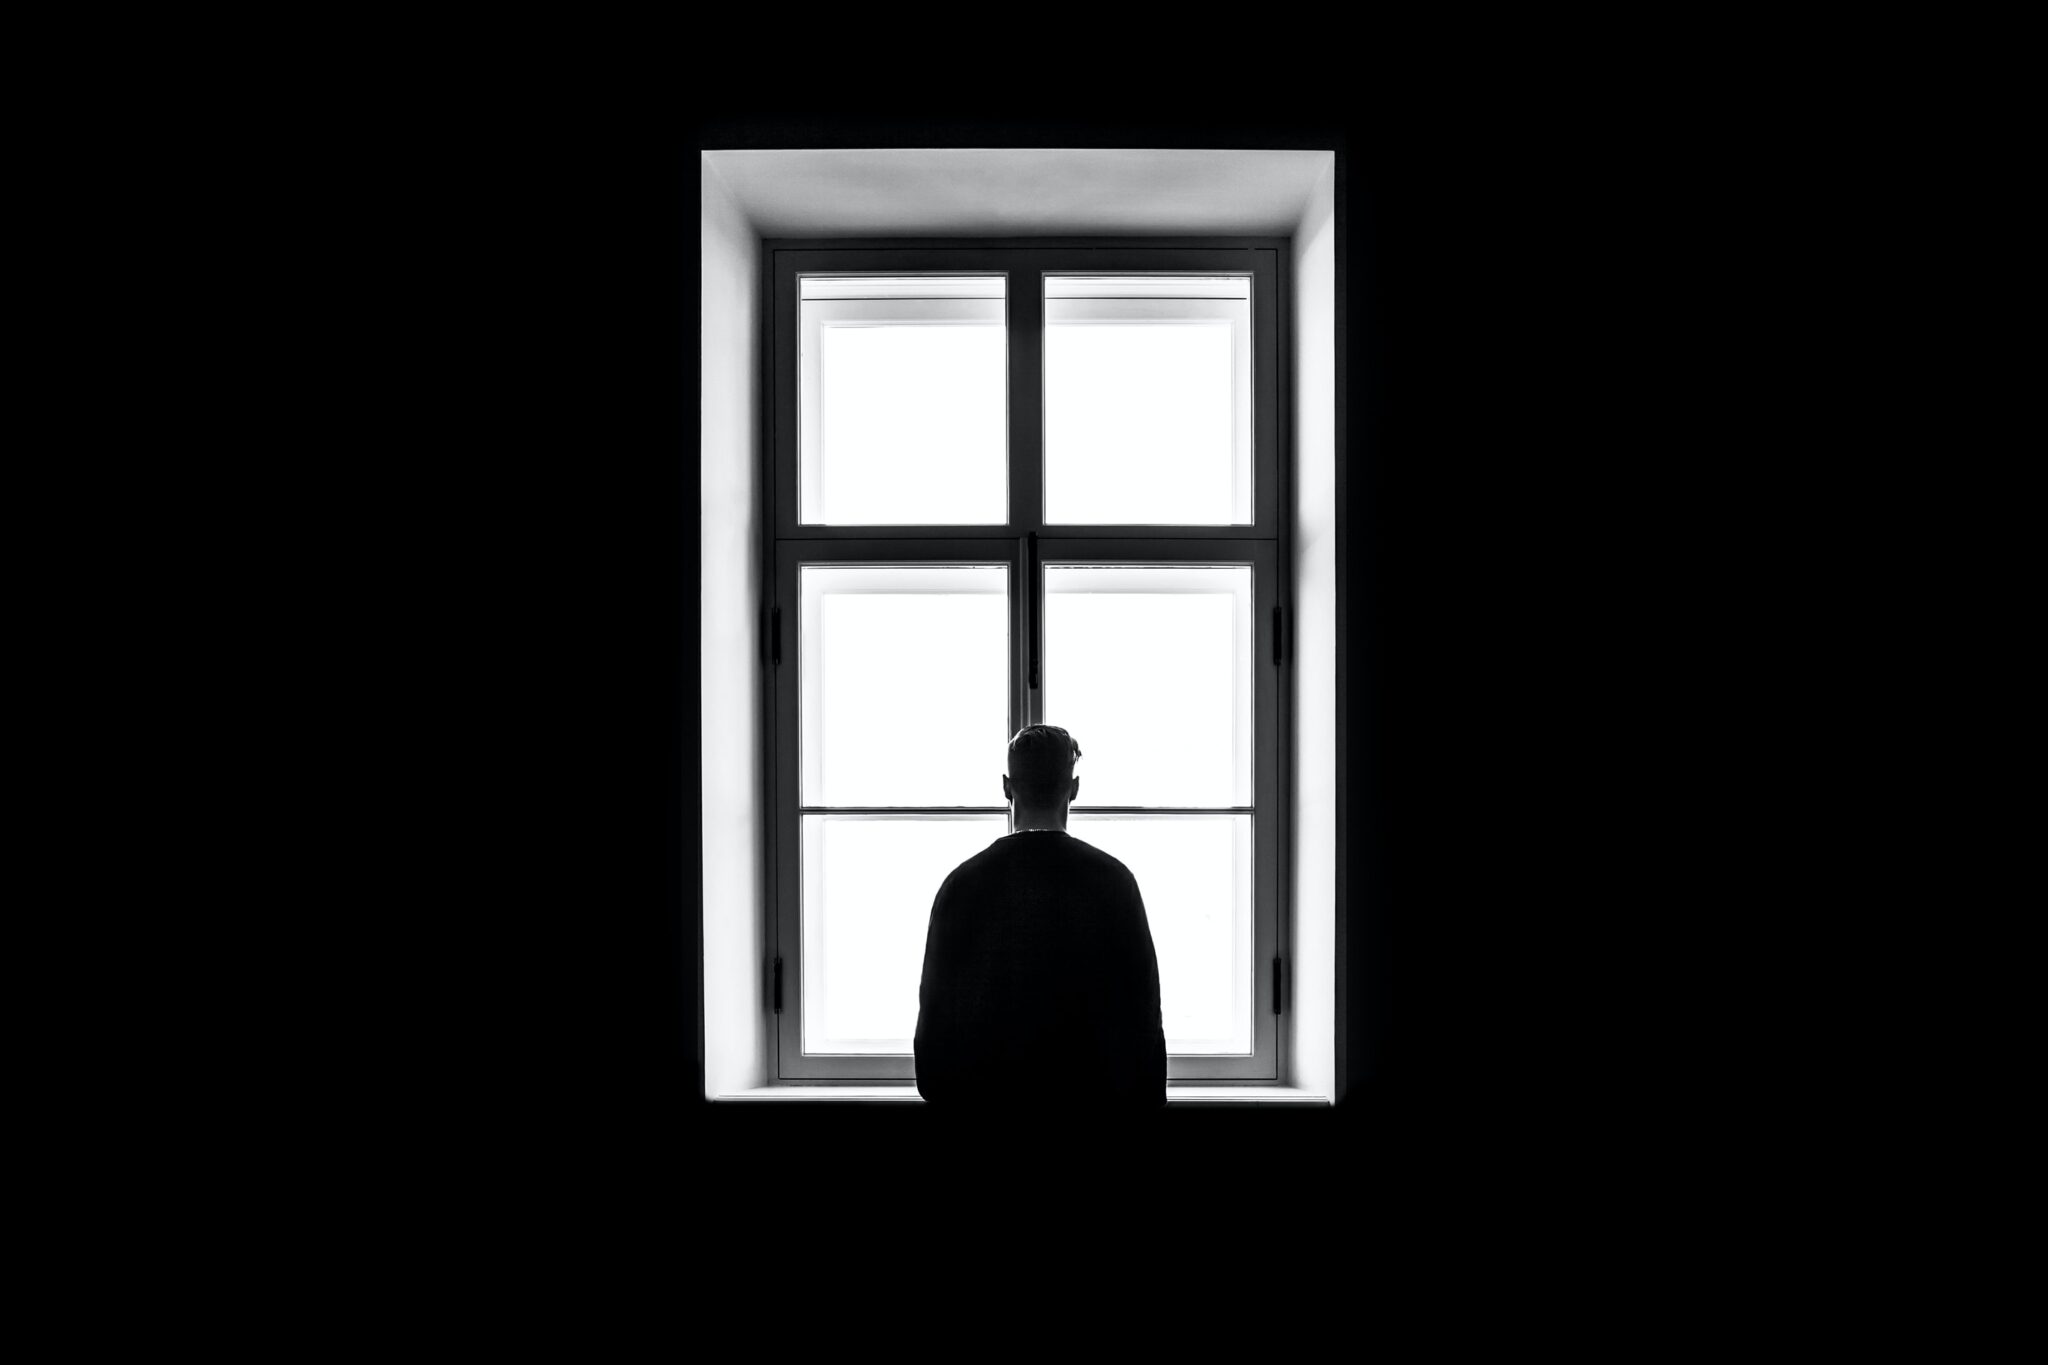 Schattenriss eines Mannes, den man von hinten sieht, wie er durch ein grosses Fenster nach draussen schaut.